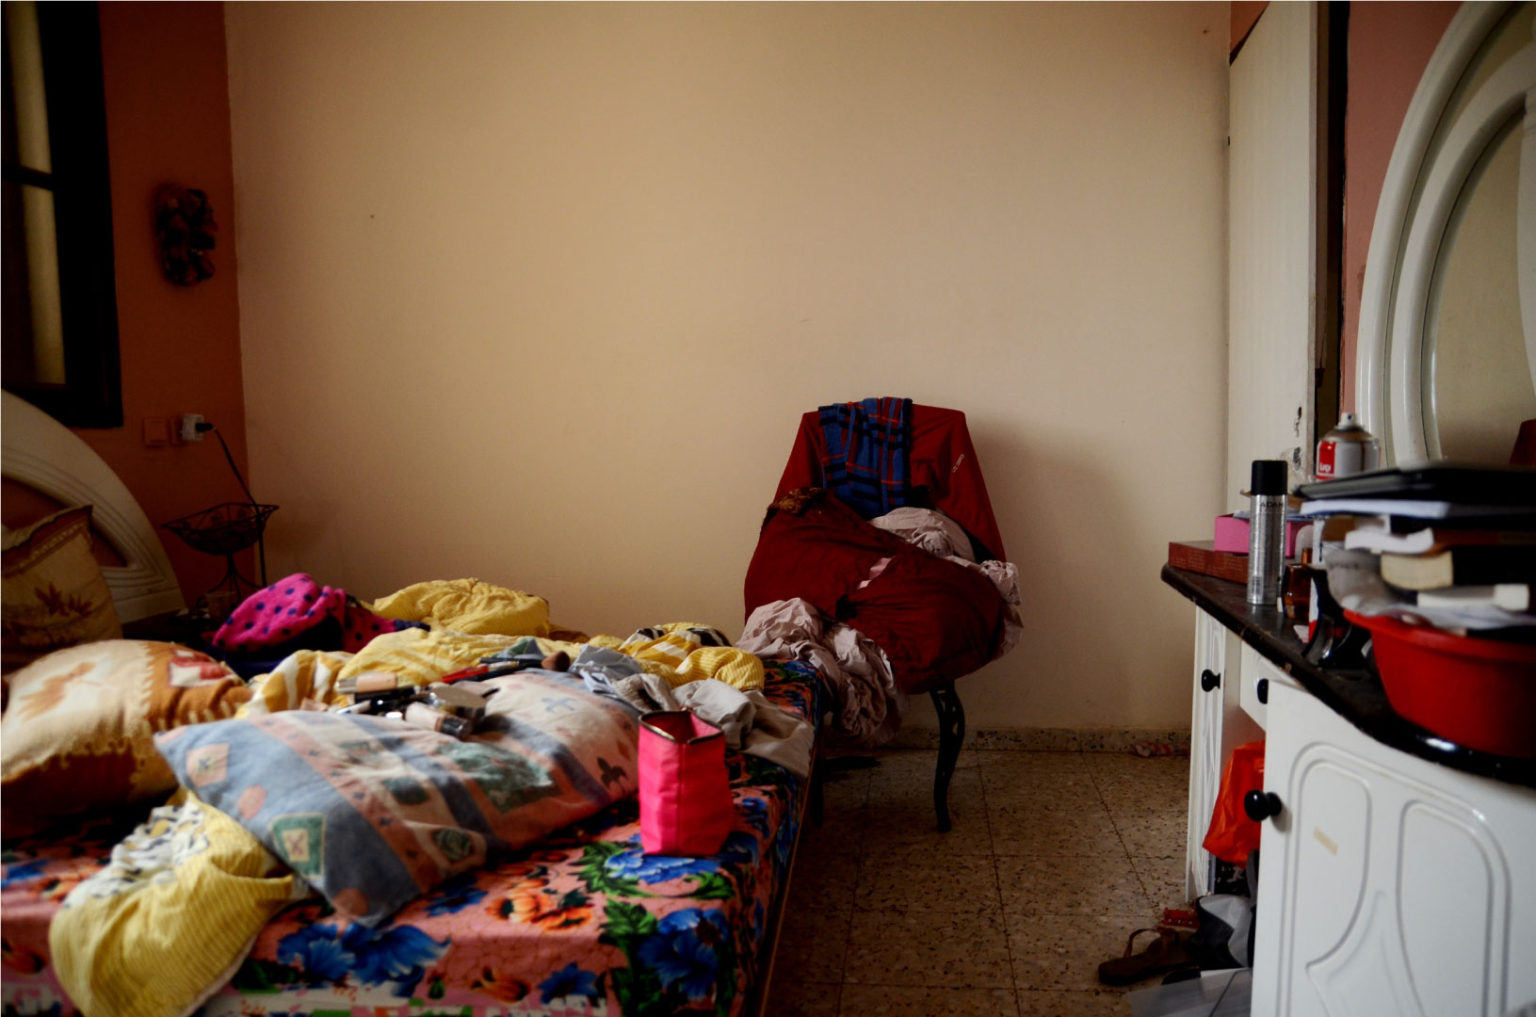 יארא קאסם מחאג'נה, ללא כותרת, 2015. מתוך הסדרה 'חדרים'. תצלום. אוסף האמנית